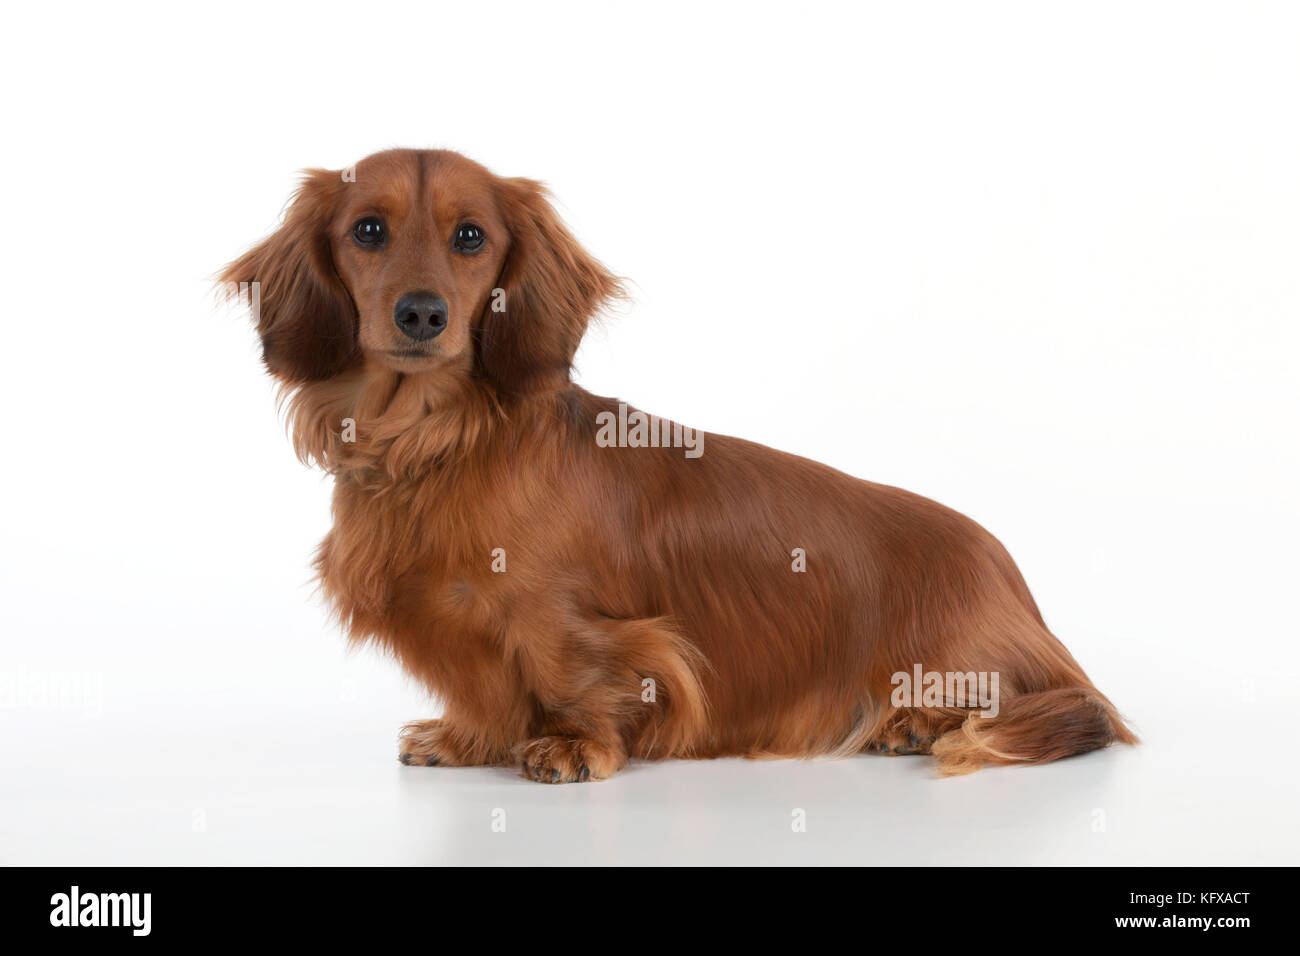 Dog - Miniature Long Haired Dachshund - seduto. Noto anche come Doxie negli Stati Uniti. Foto Stock